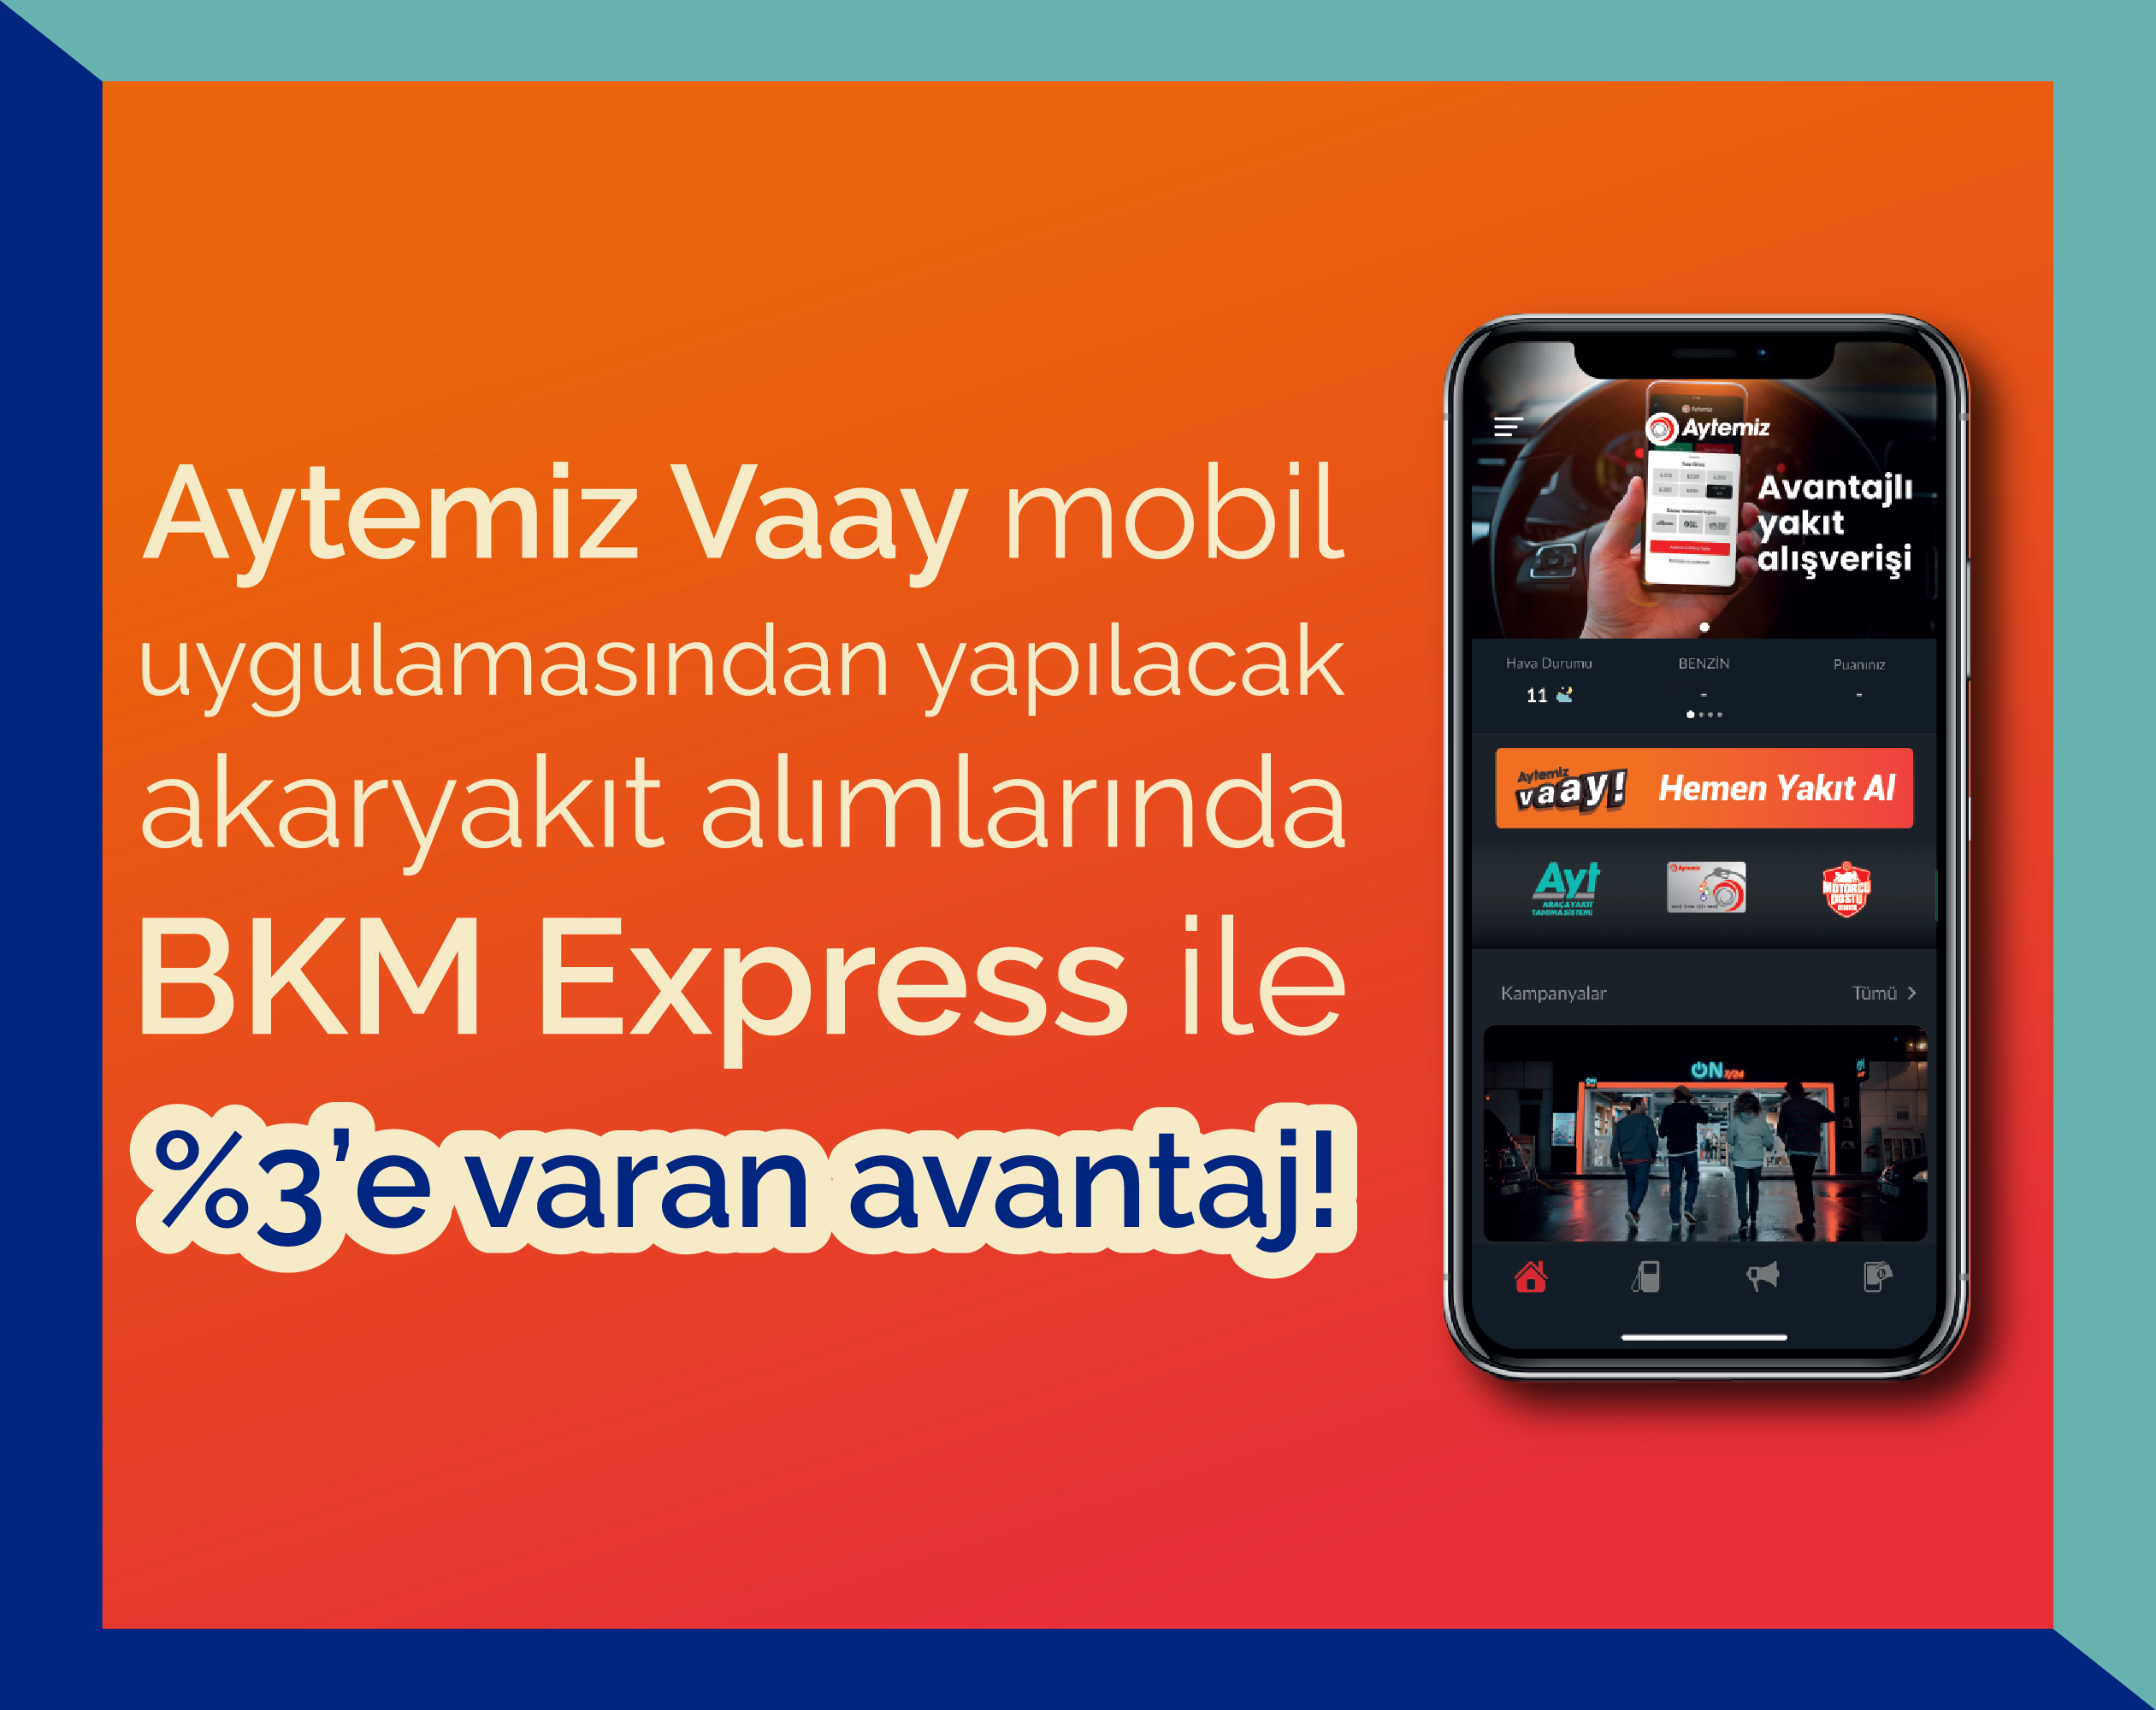 Aytemiz Vaay mobil uygulamasından yapılacak akaryakıt alımlarında %3'e varan avantaj!